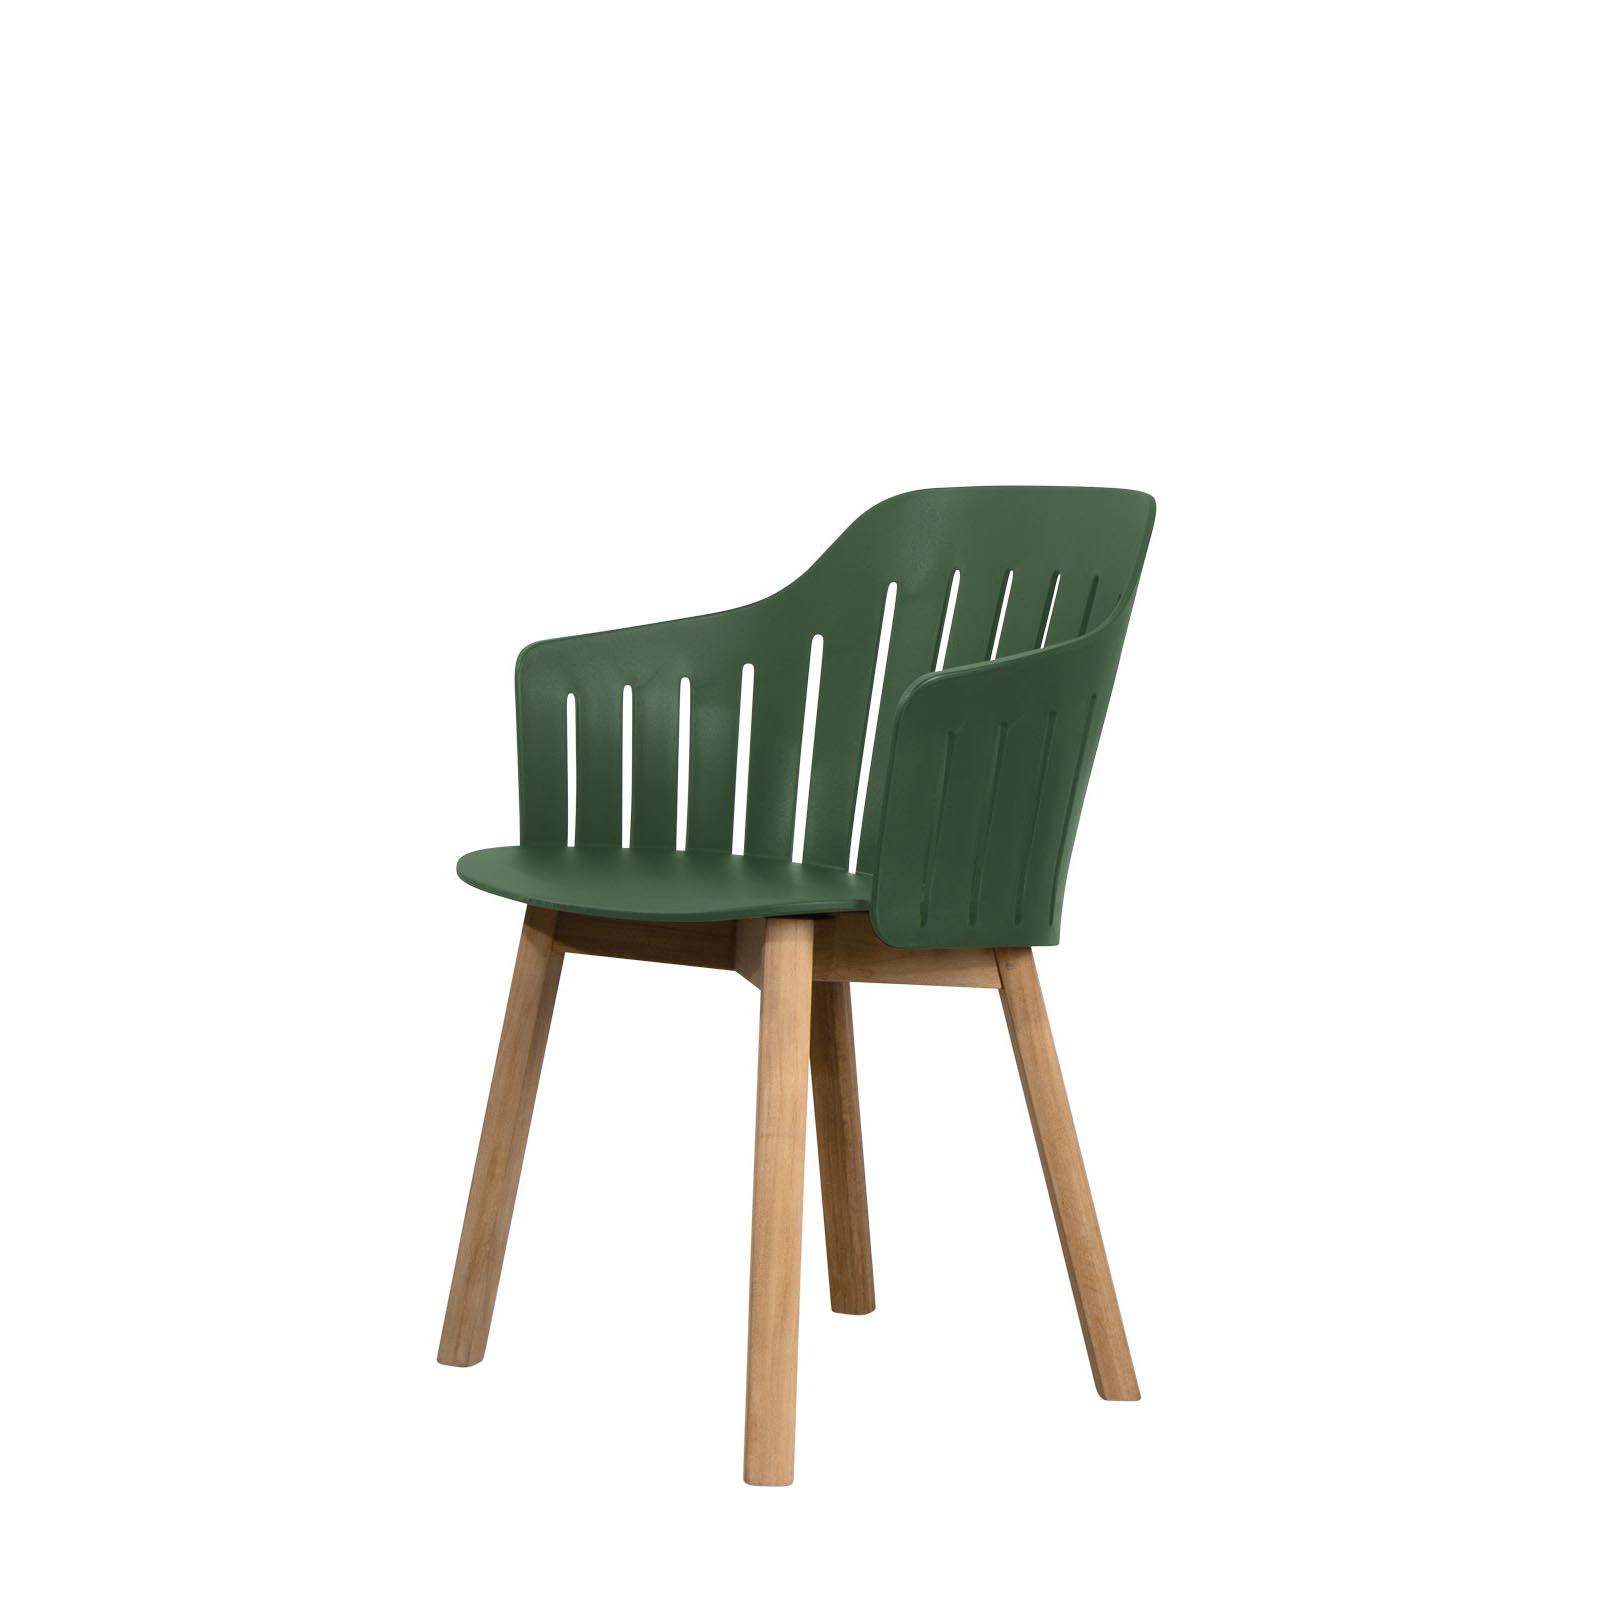 Choice chair aus recyceltes Polypropylene in Black mit Basis aus  in Dark Green